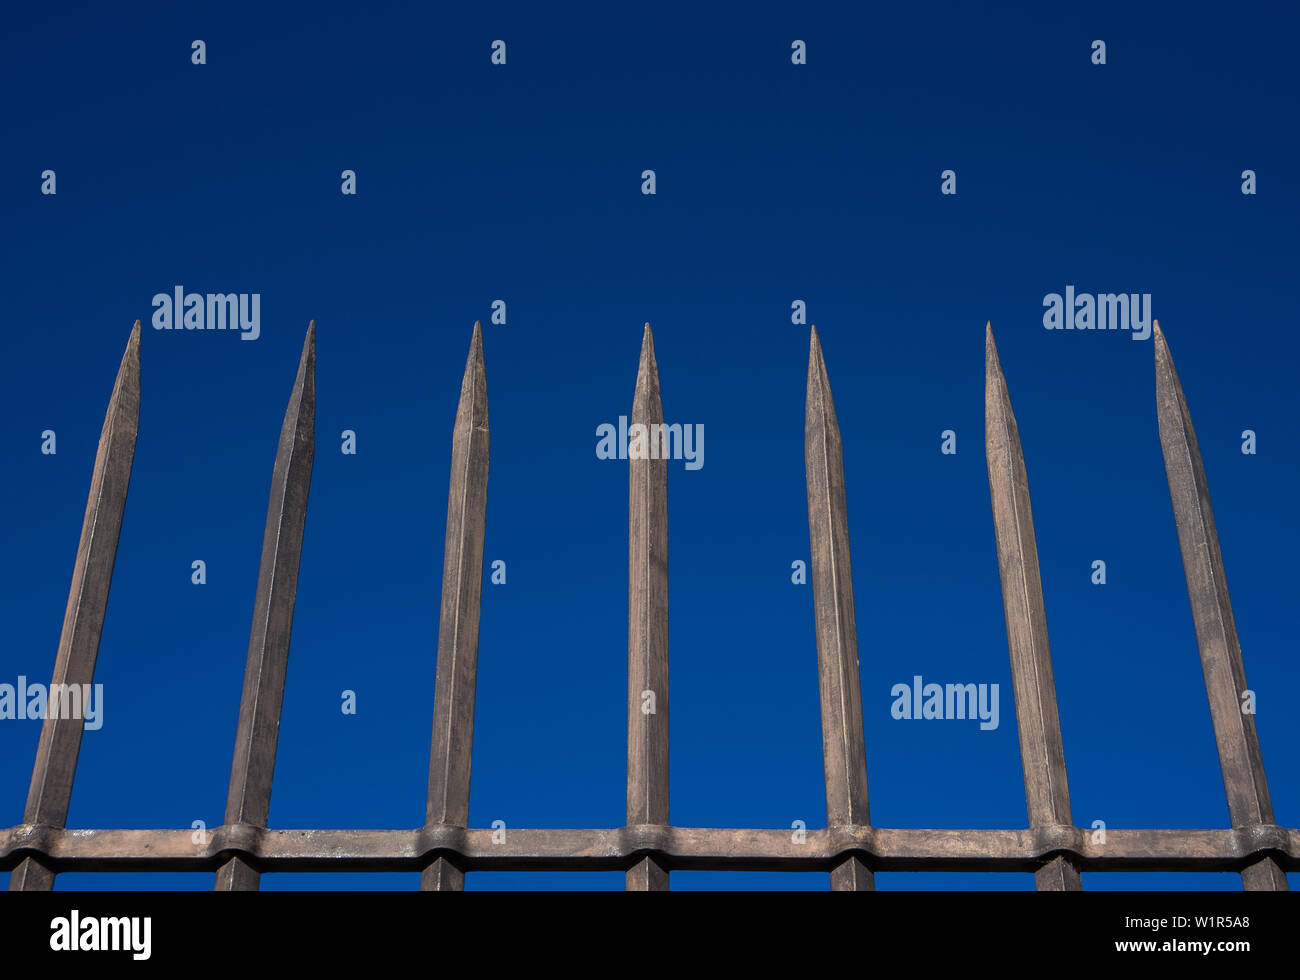 Recinzione in acciaio barriera con barre appuntite contro il cielo blu. Concetto di reclusione, ostacolo, sicurezza di protezione Foto Stock